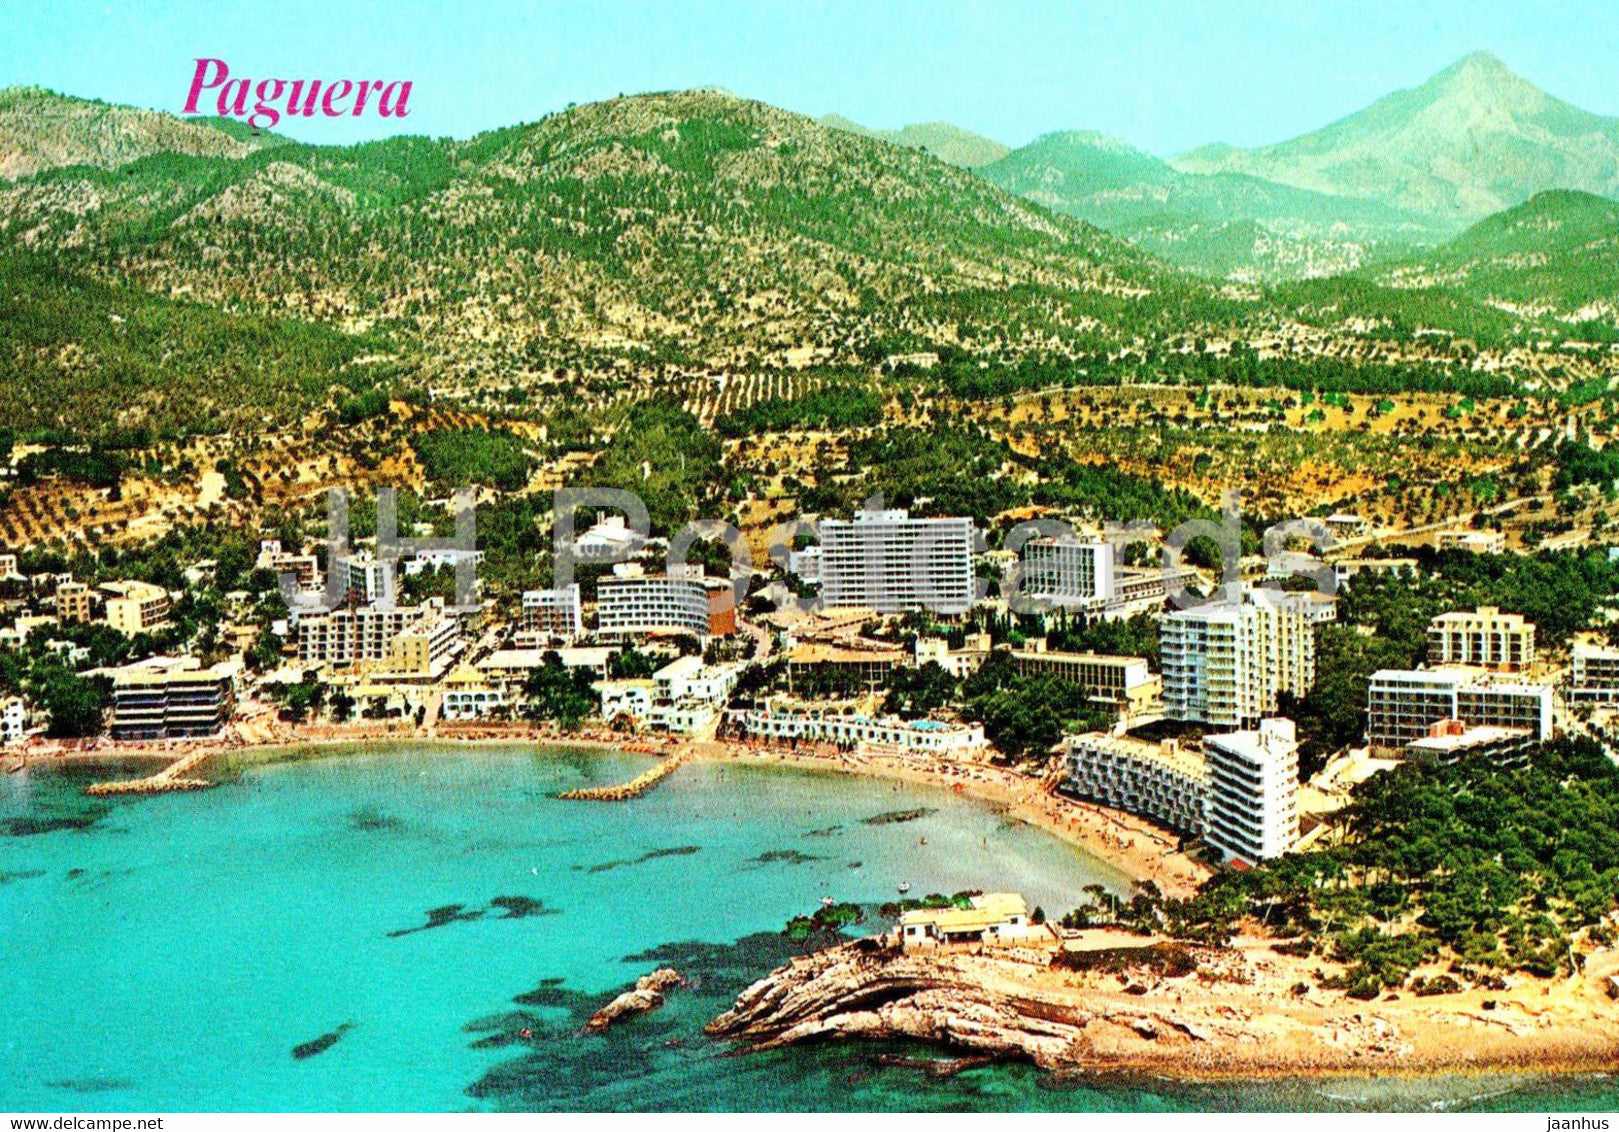 Paguera - Vista Aerea - Mallorca - 1 - 2928 - Spain - unused - JH Postcards